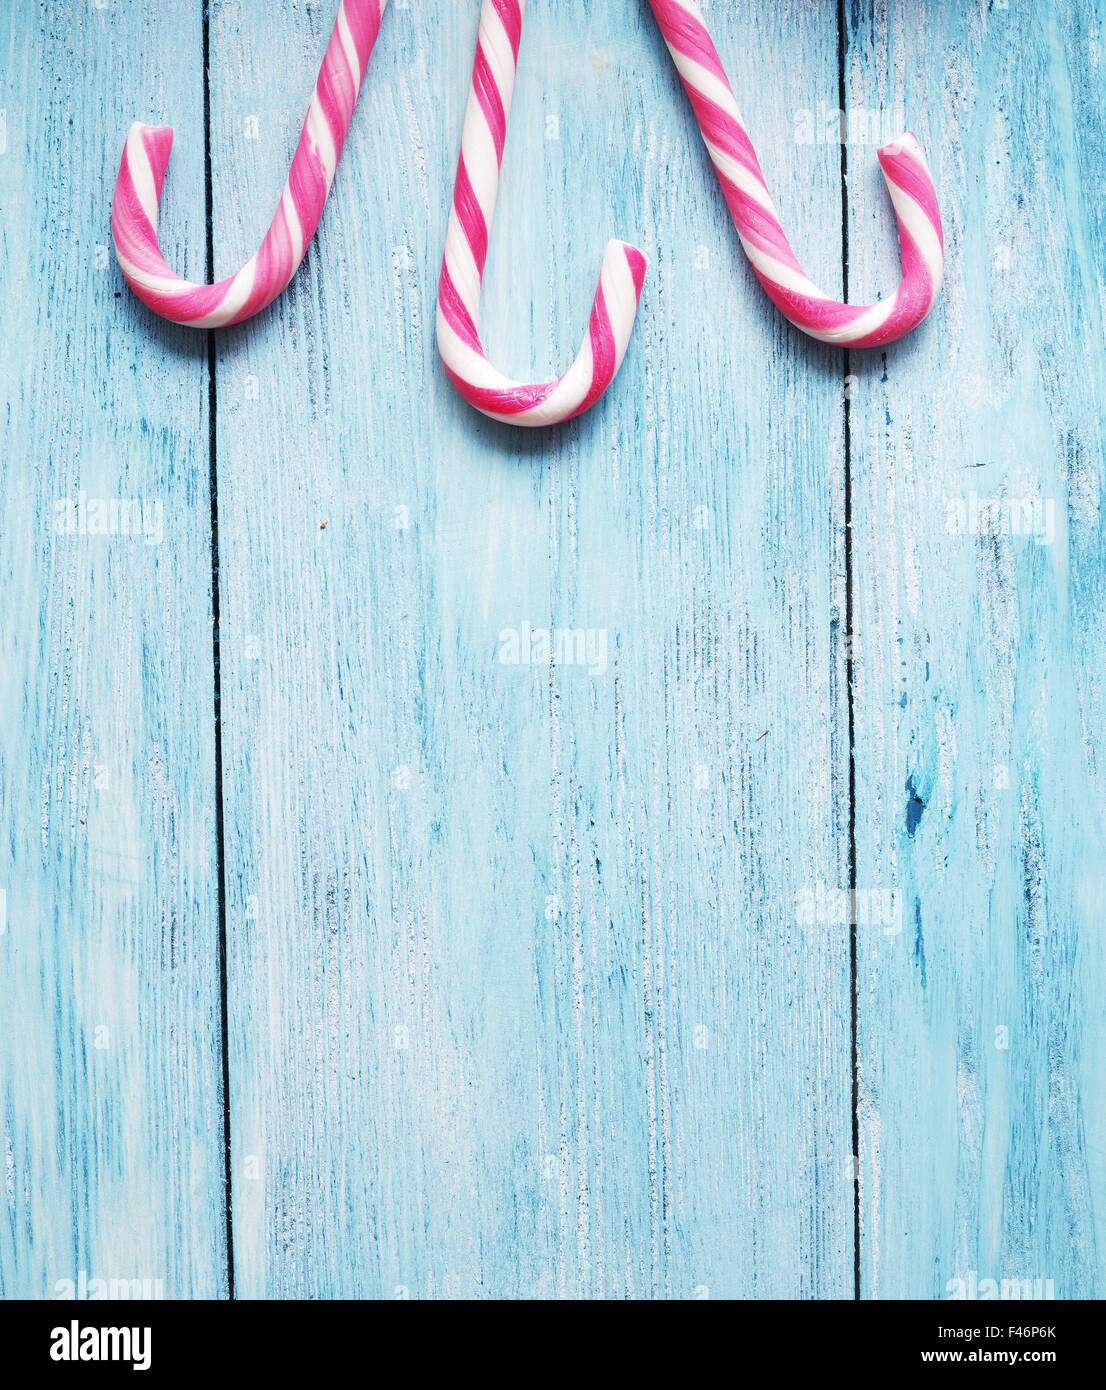 Candy Stöcke auf blauem Hintergrund aus Holz. Stockfoto